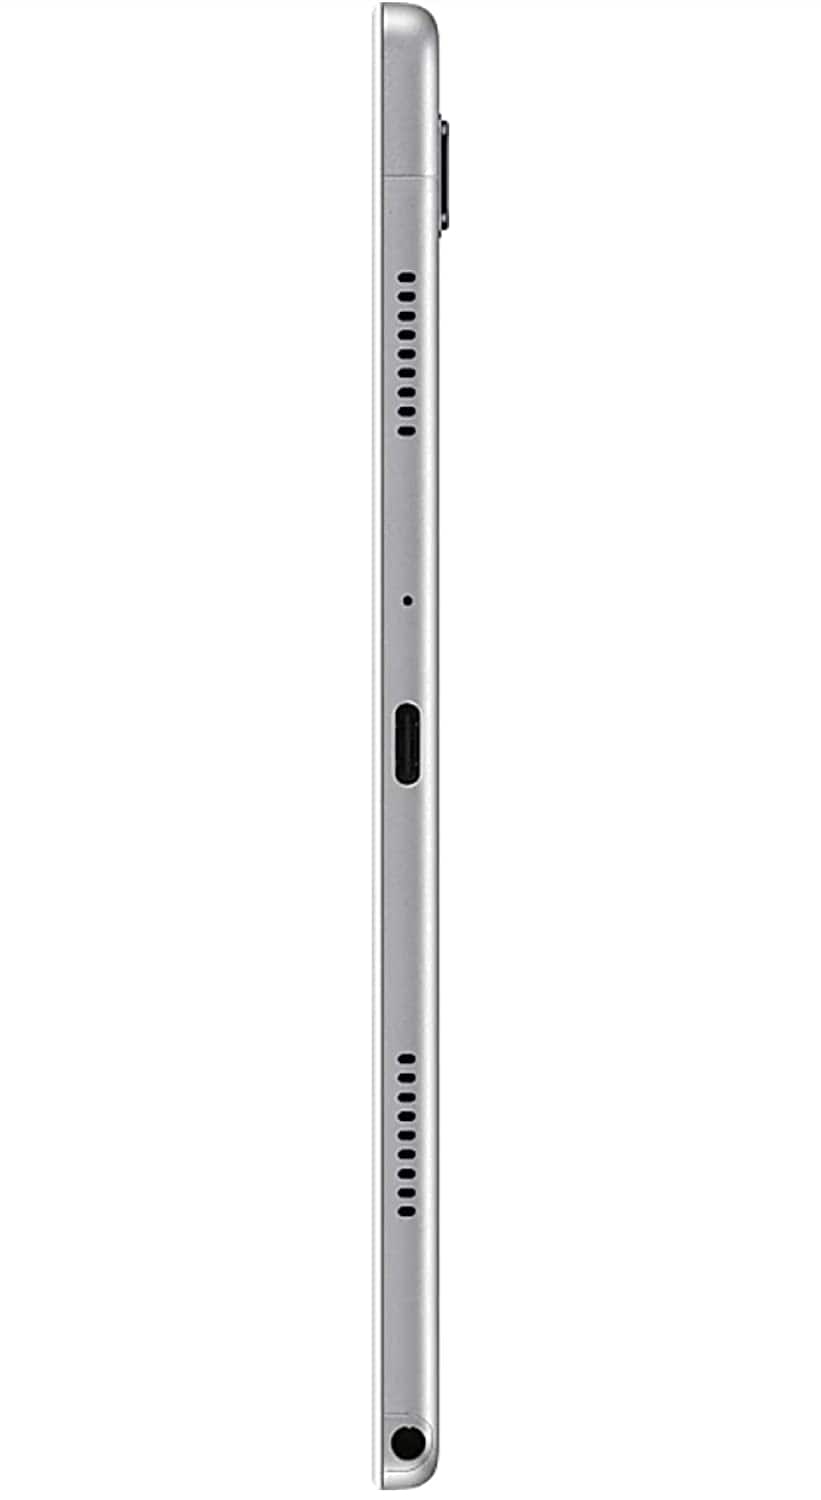 Samsung Galaxy Tab A7 26.31 cm (10.4 inch),(3GB+32GB) Metal Body-Tablet Computers-dealsplant